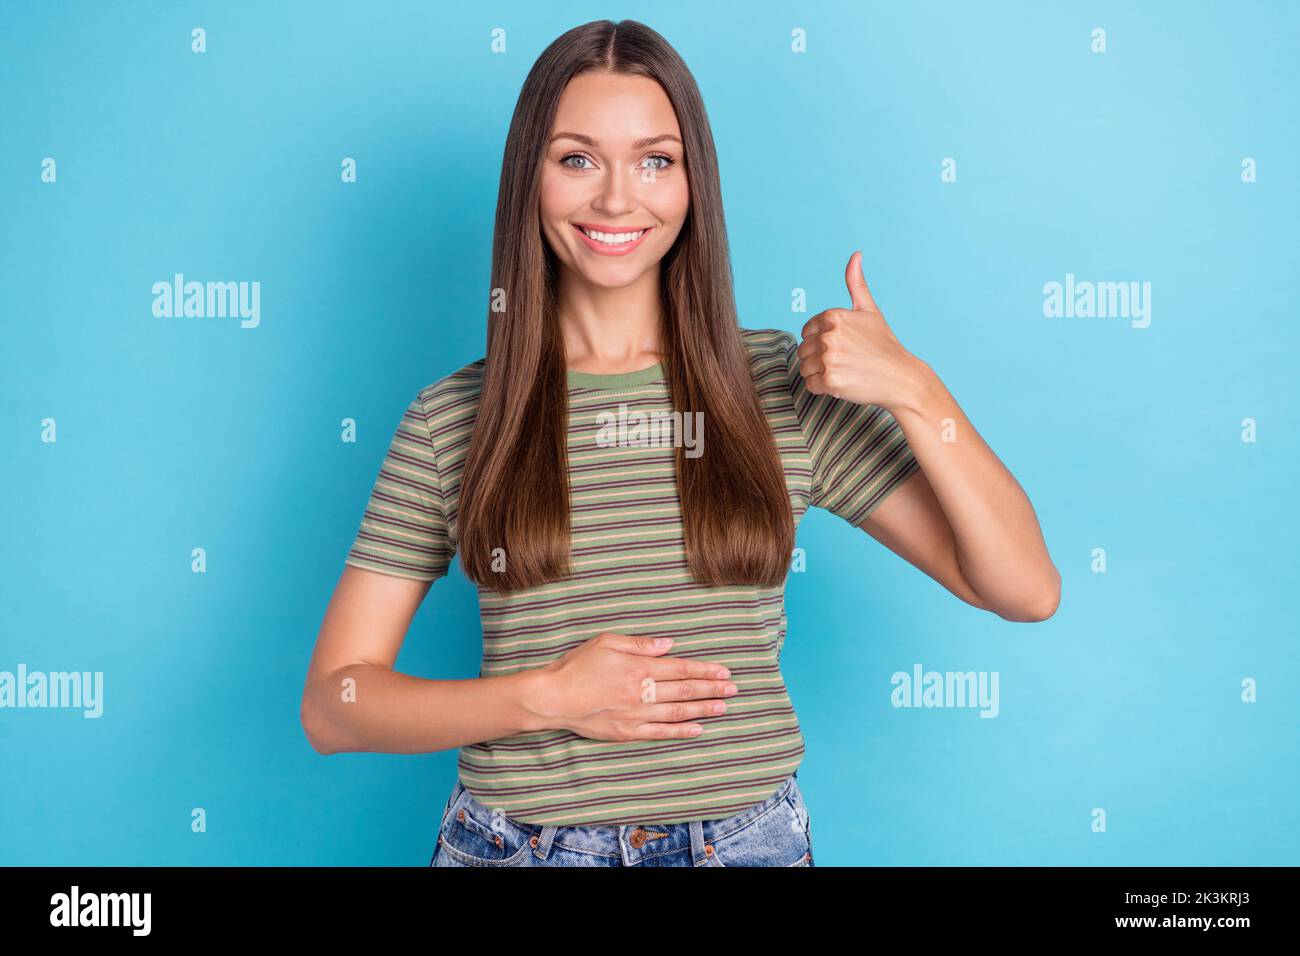 Portrait Foto von jungen positiven attraktiven Mädchen zeigt Daumen nach oben wie gute Laune halten Hand Bauch pms gesunde Ernährung isoliert auf blauem Hintergrund Stockfoto